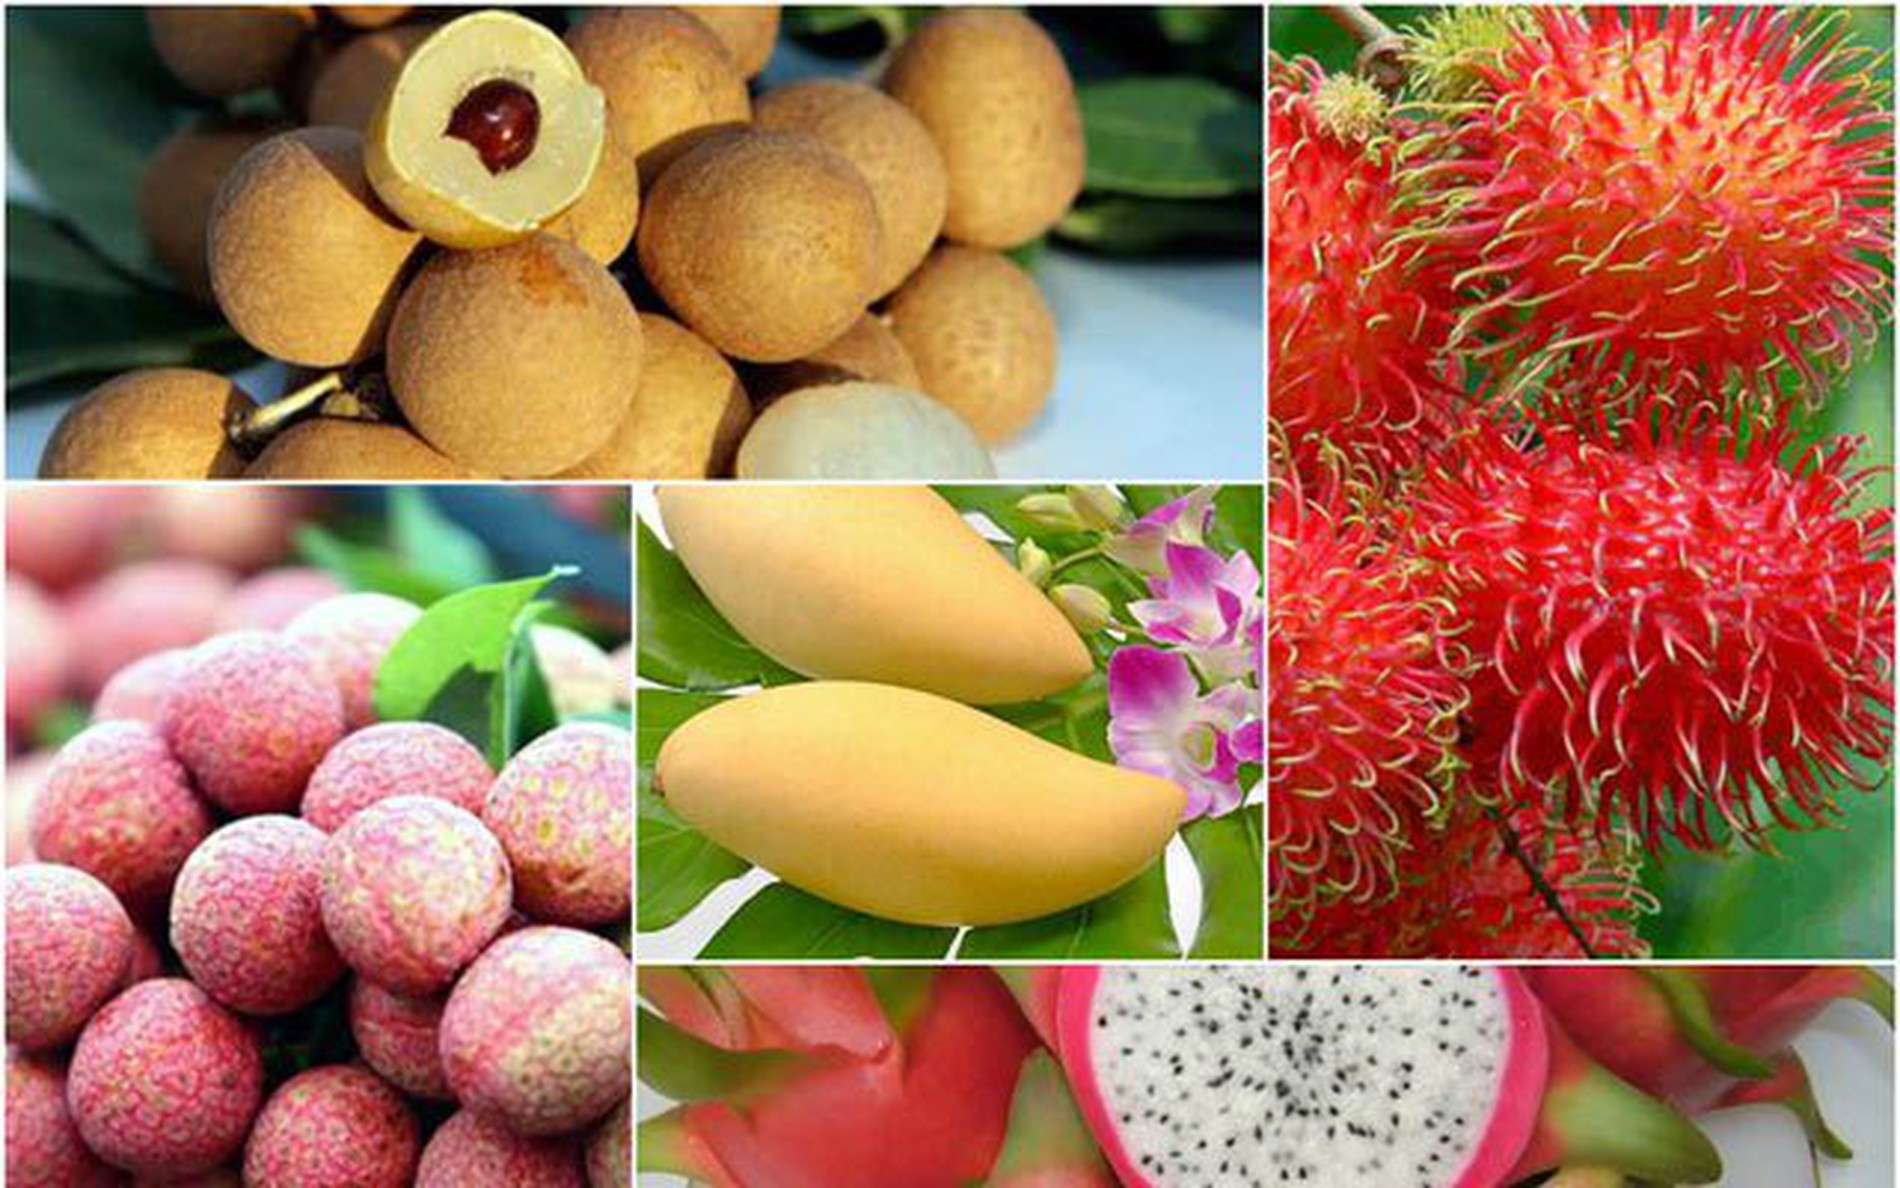 越南中国将签署关于越南水果出口中国植物检疫要求议定书